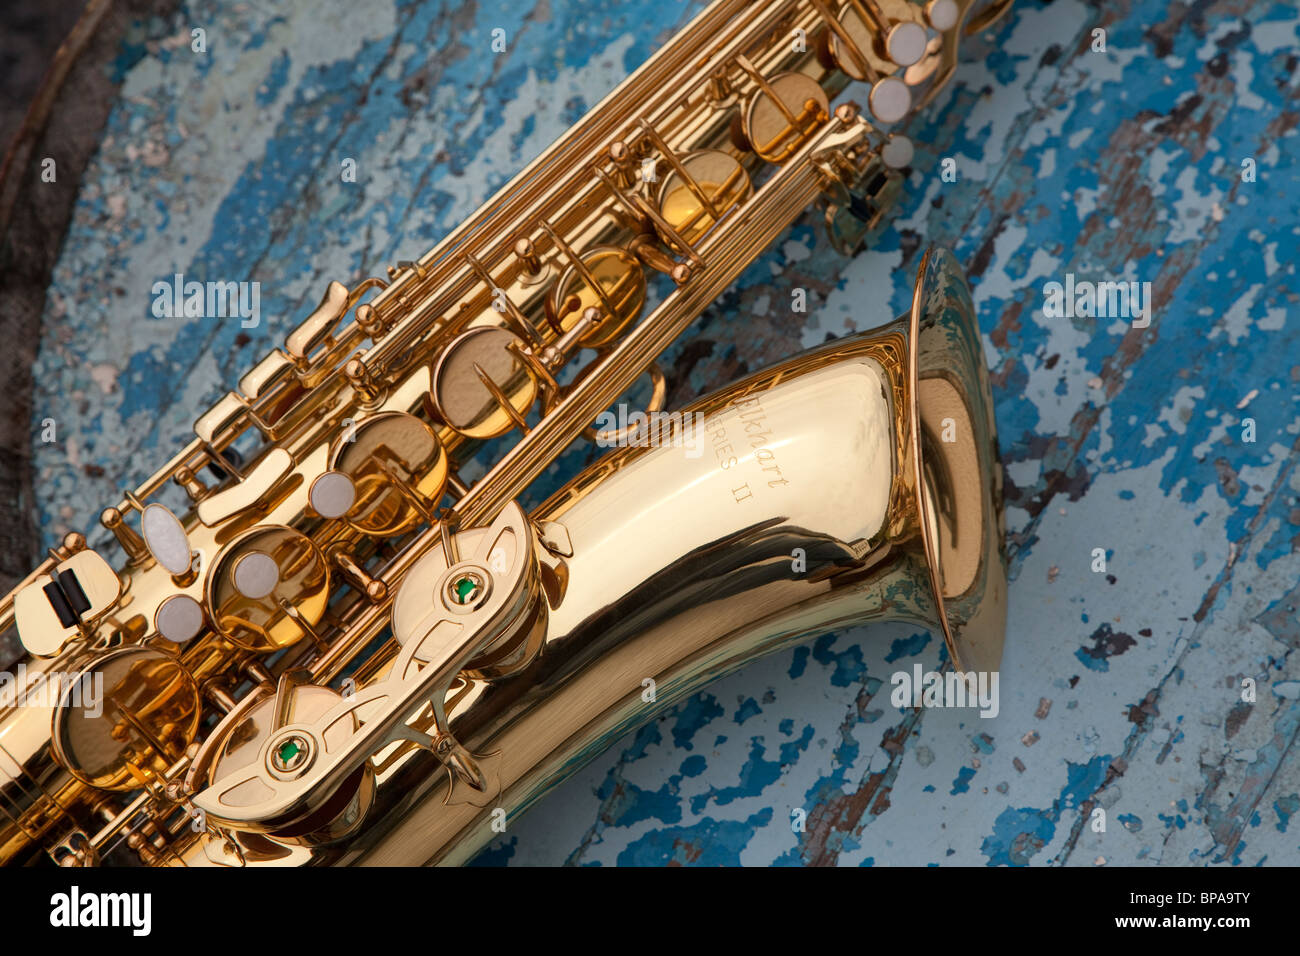 Eine neue Saxophon Kontrast gegen das Abblättern blaue Farbe von einem Whisky-Fass. Stockfoto